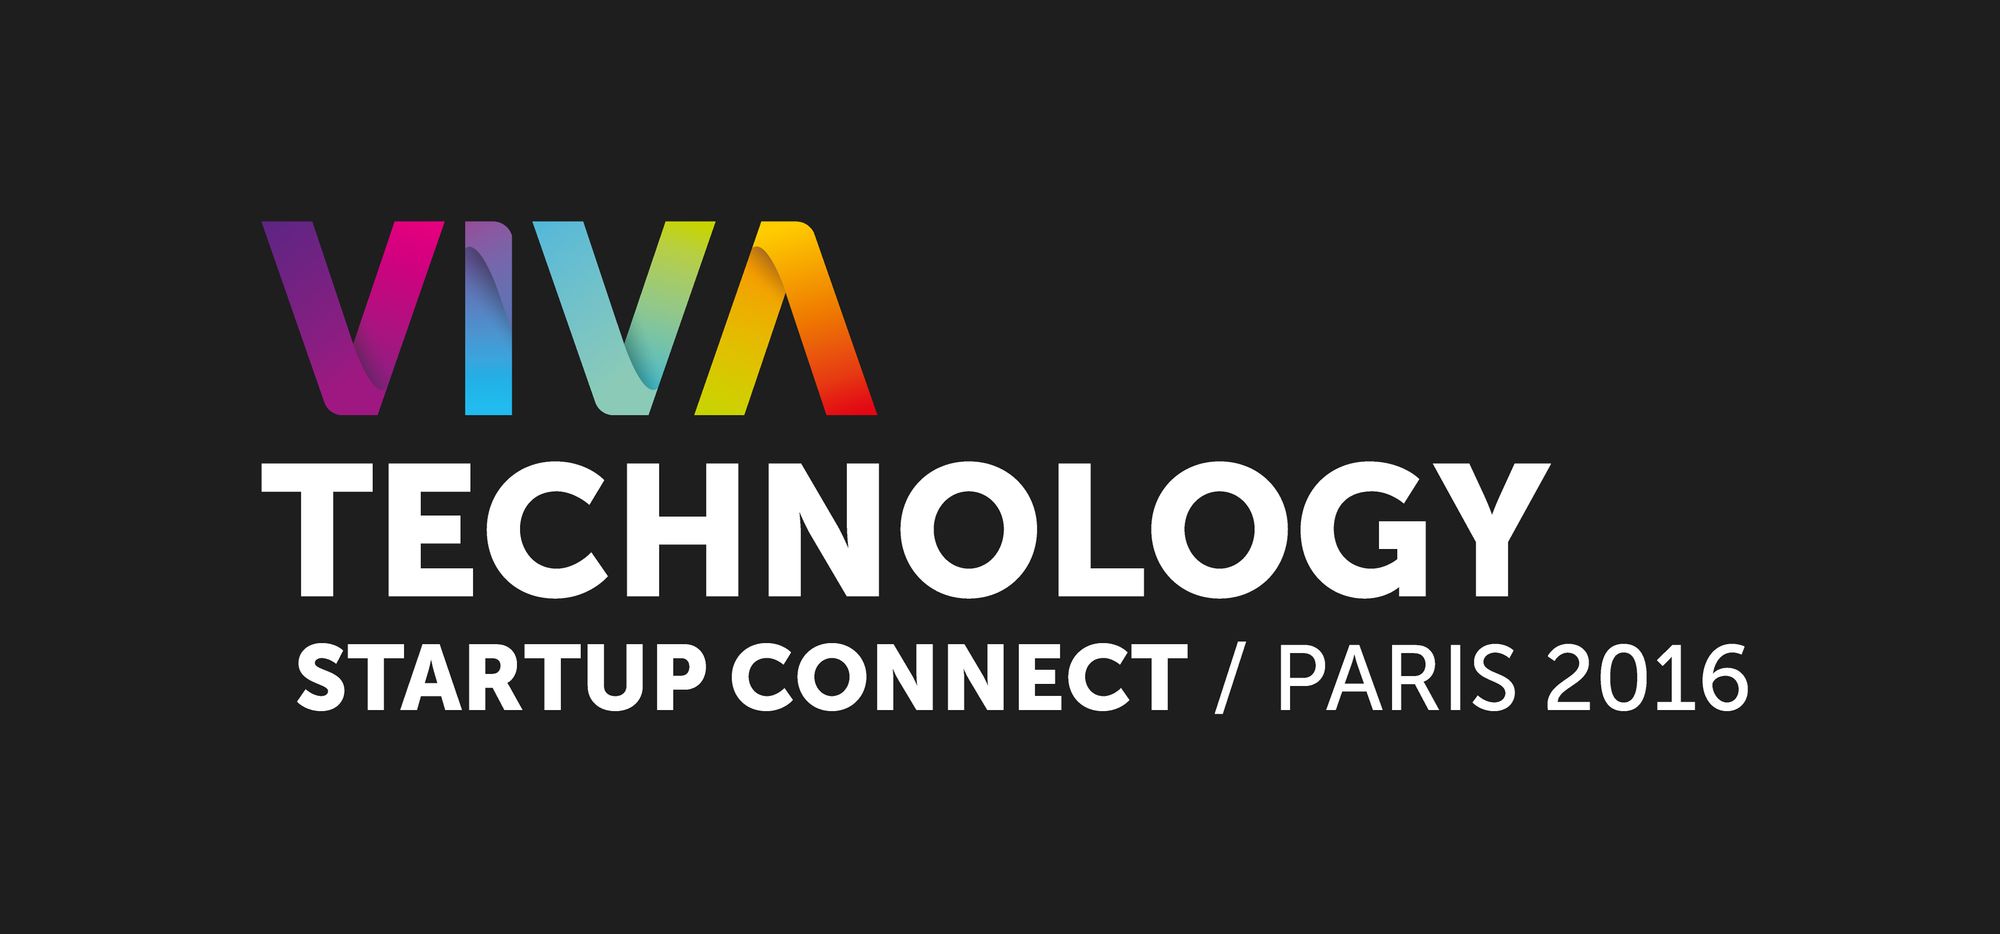 Jawg à Viva Technology 2016 avec SNCF Transilien